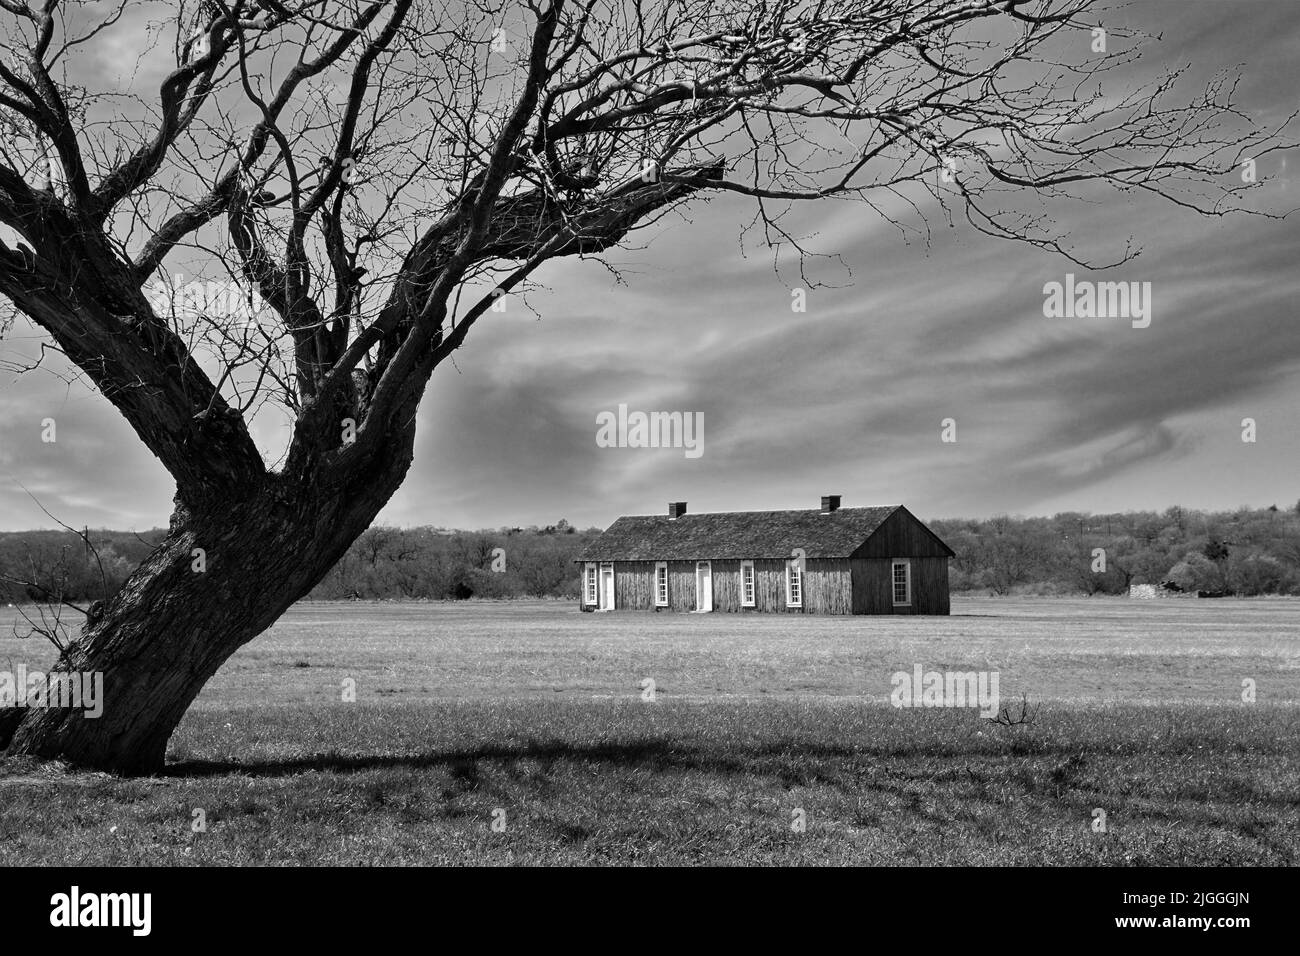 Il s'agit d'une image en noir et blanc des casernes masculines inscrites à fort Richardson, un site historique national, près de Jacksboro, Texas, États-Unis. Banque D'Images